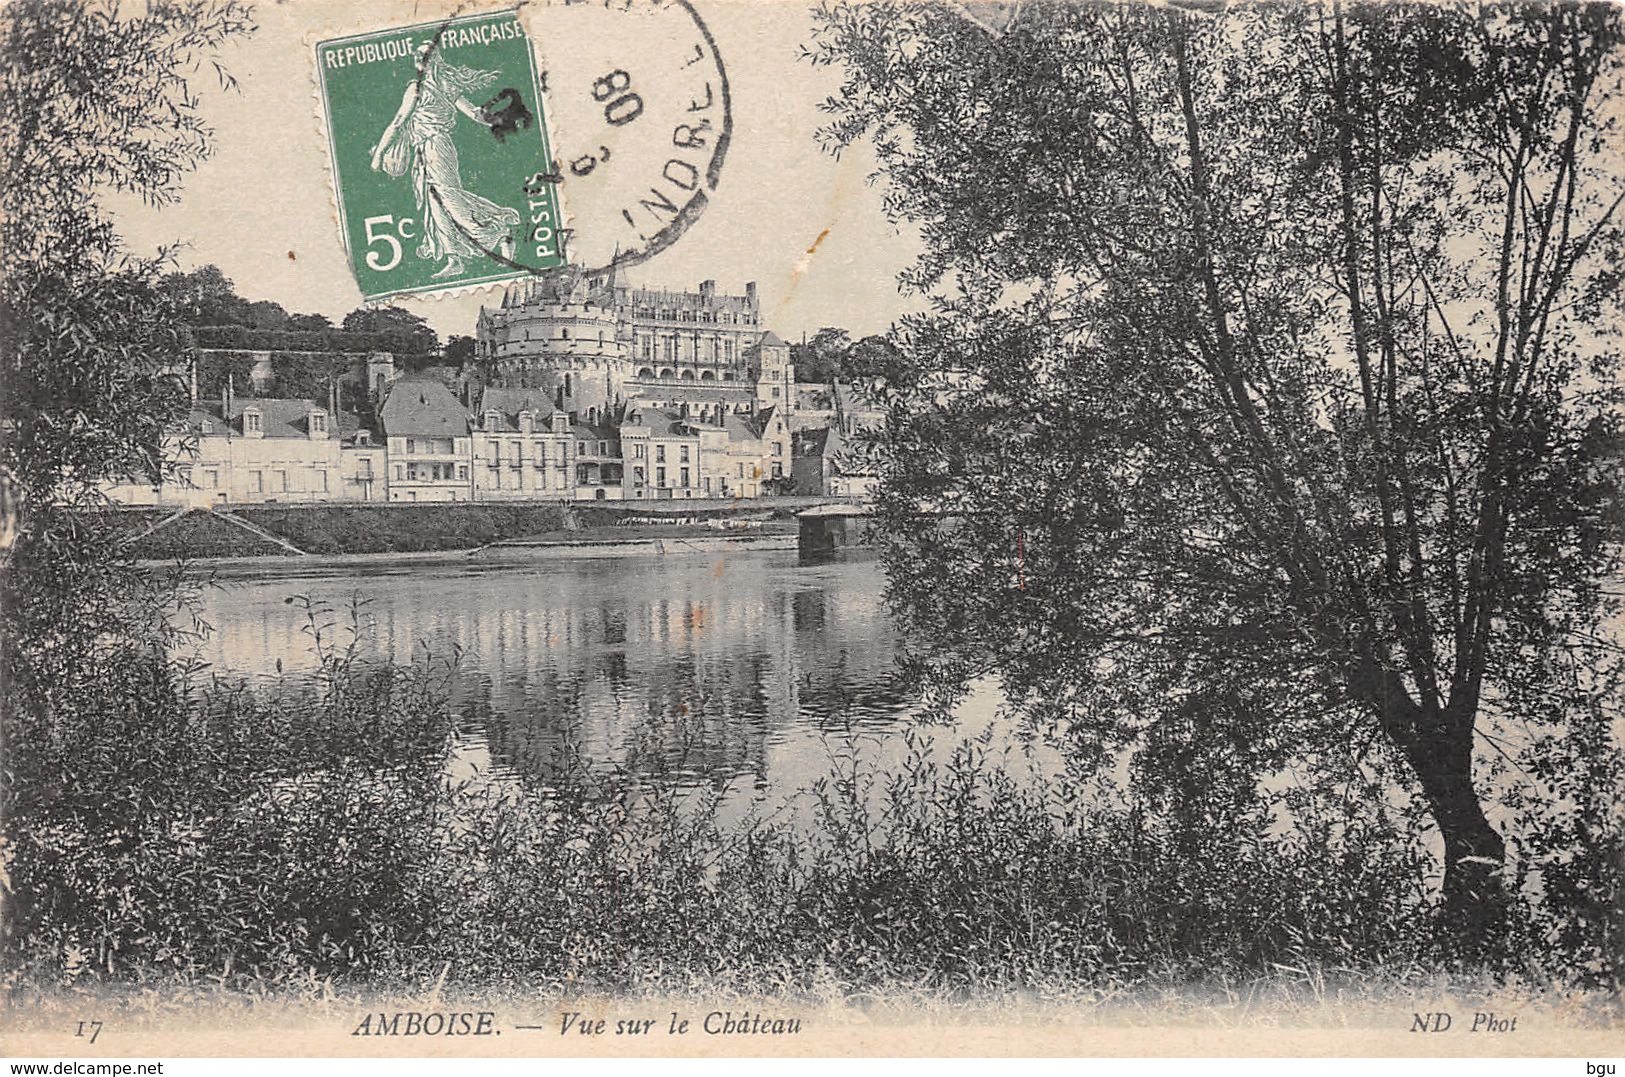 Amboise (37) - Lot de 16 cartes format CPA